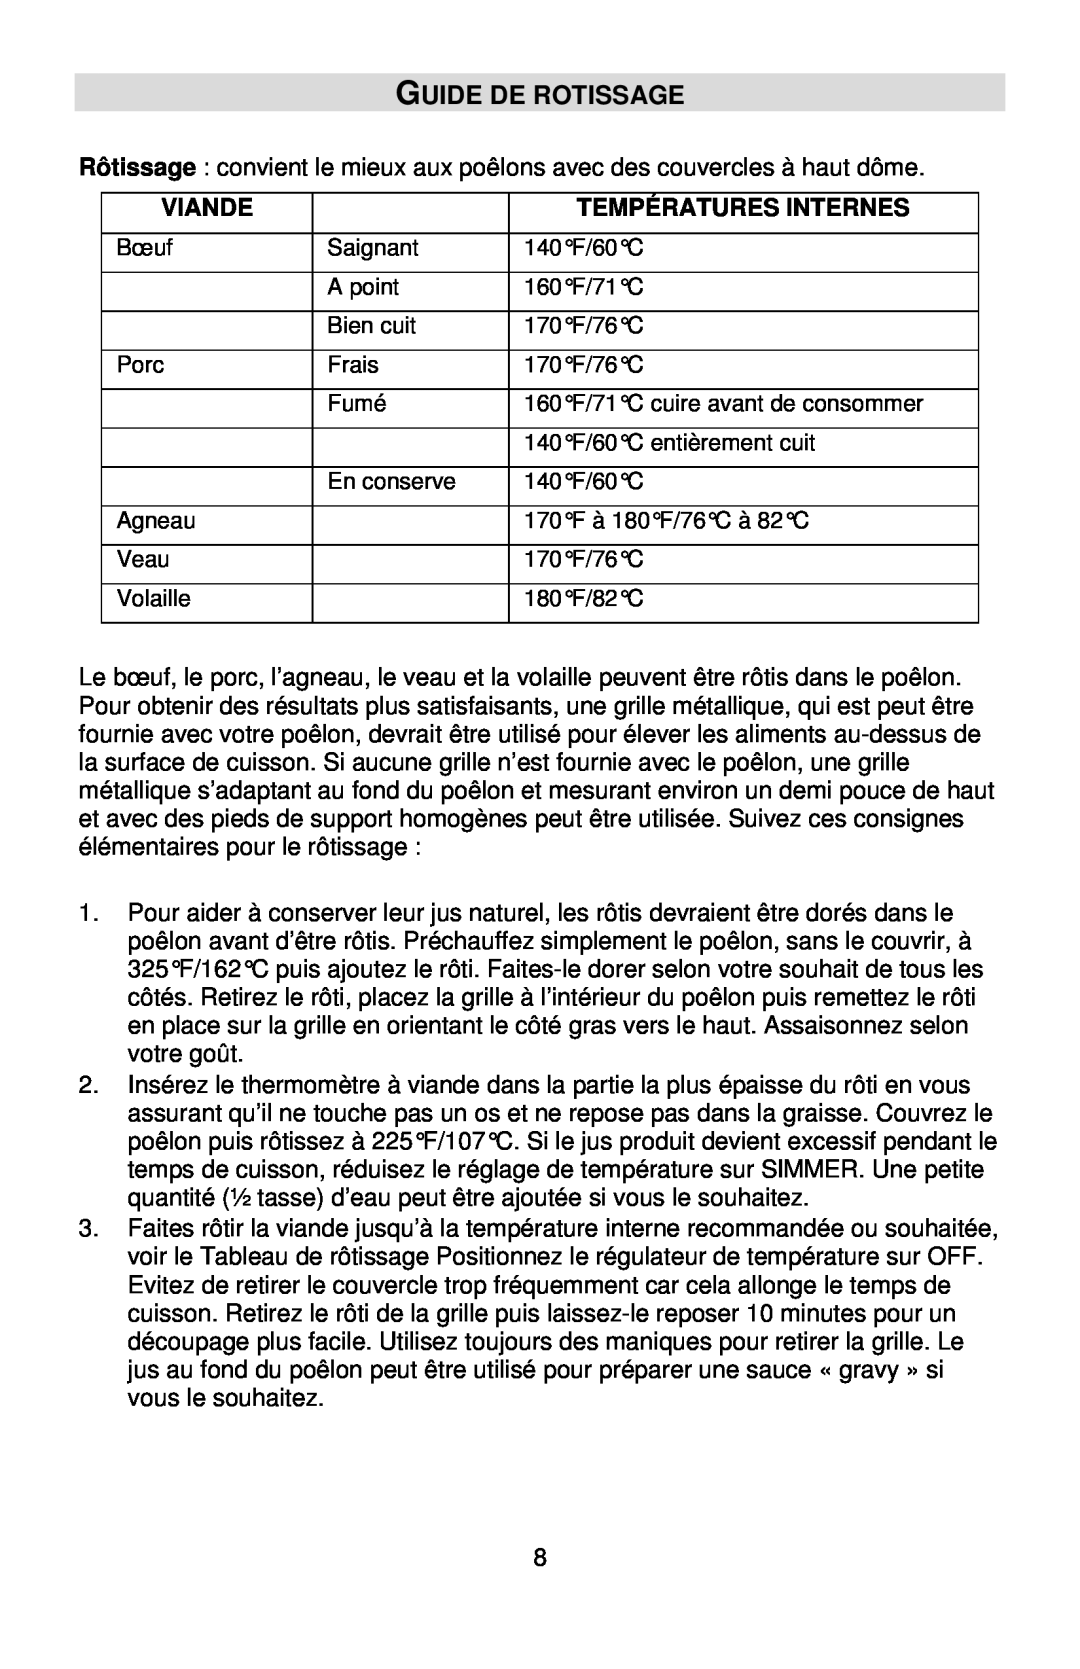 West Bend L5571D instruction manual Guide De Rotissage, Viande, Températures Internes 